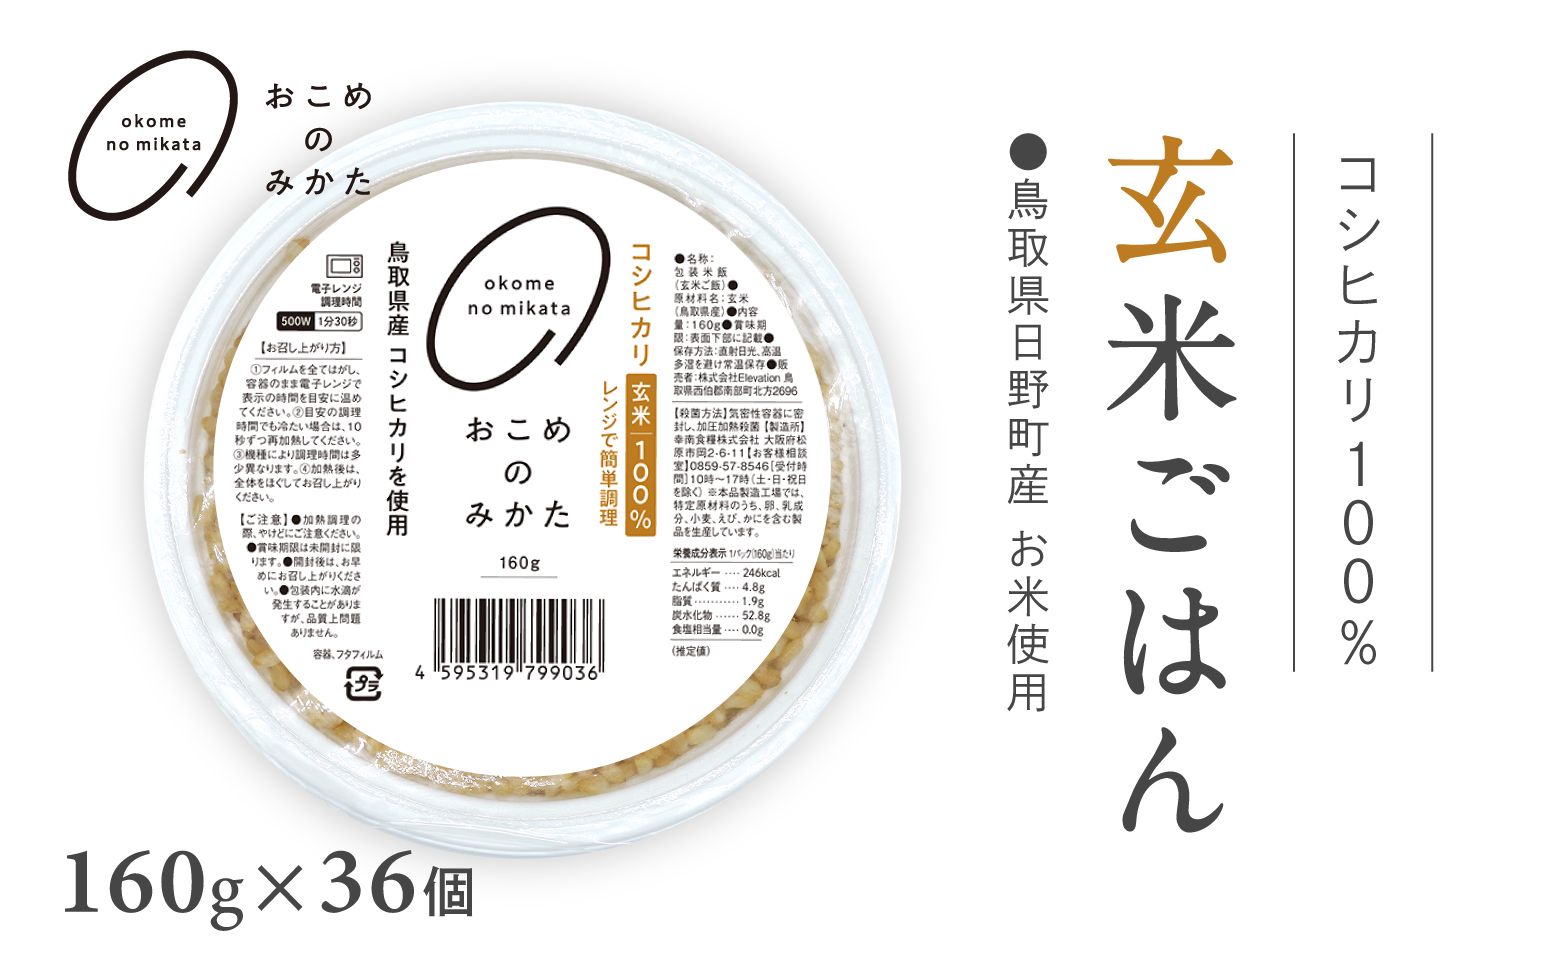 鳥取県日野町産コシヒカリ 玄米ごはん 玄米パック 160g×36個入り おこめのみかた パックごはん パックご飯